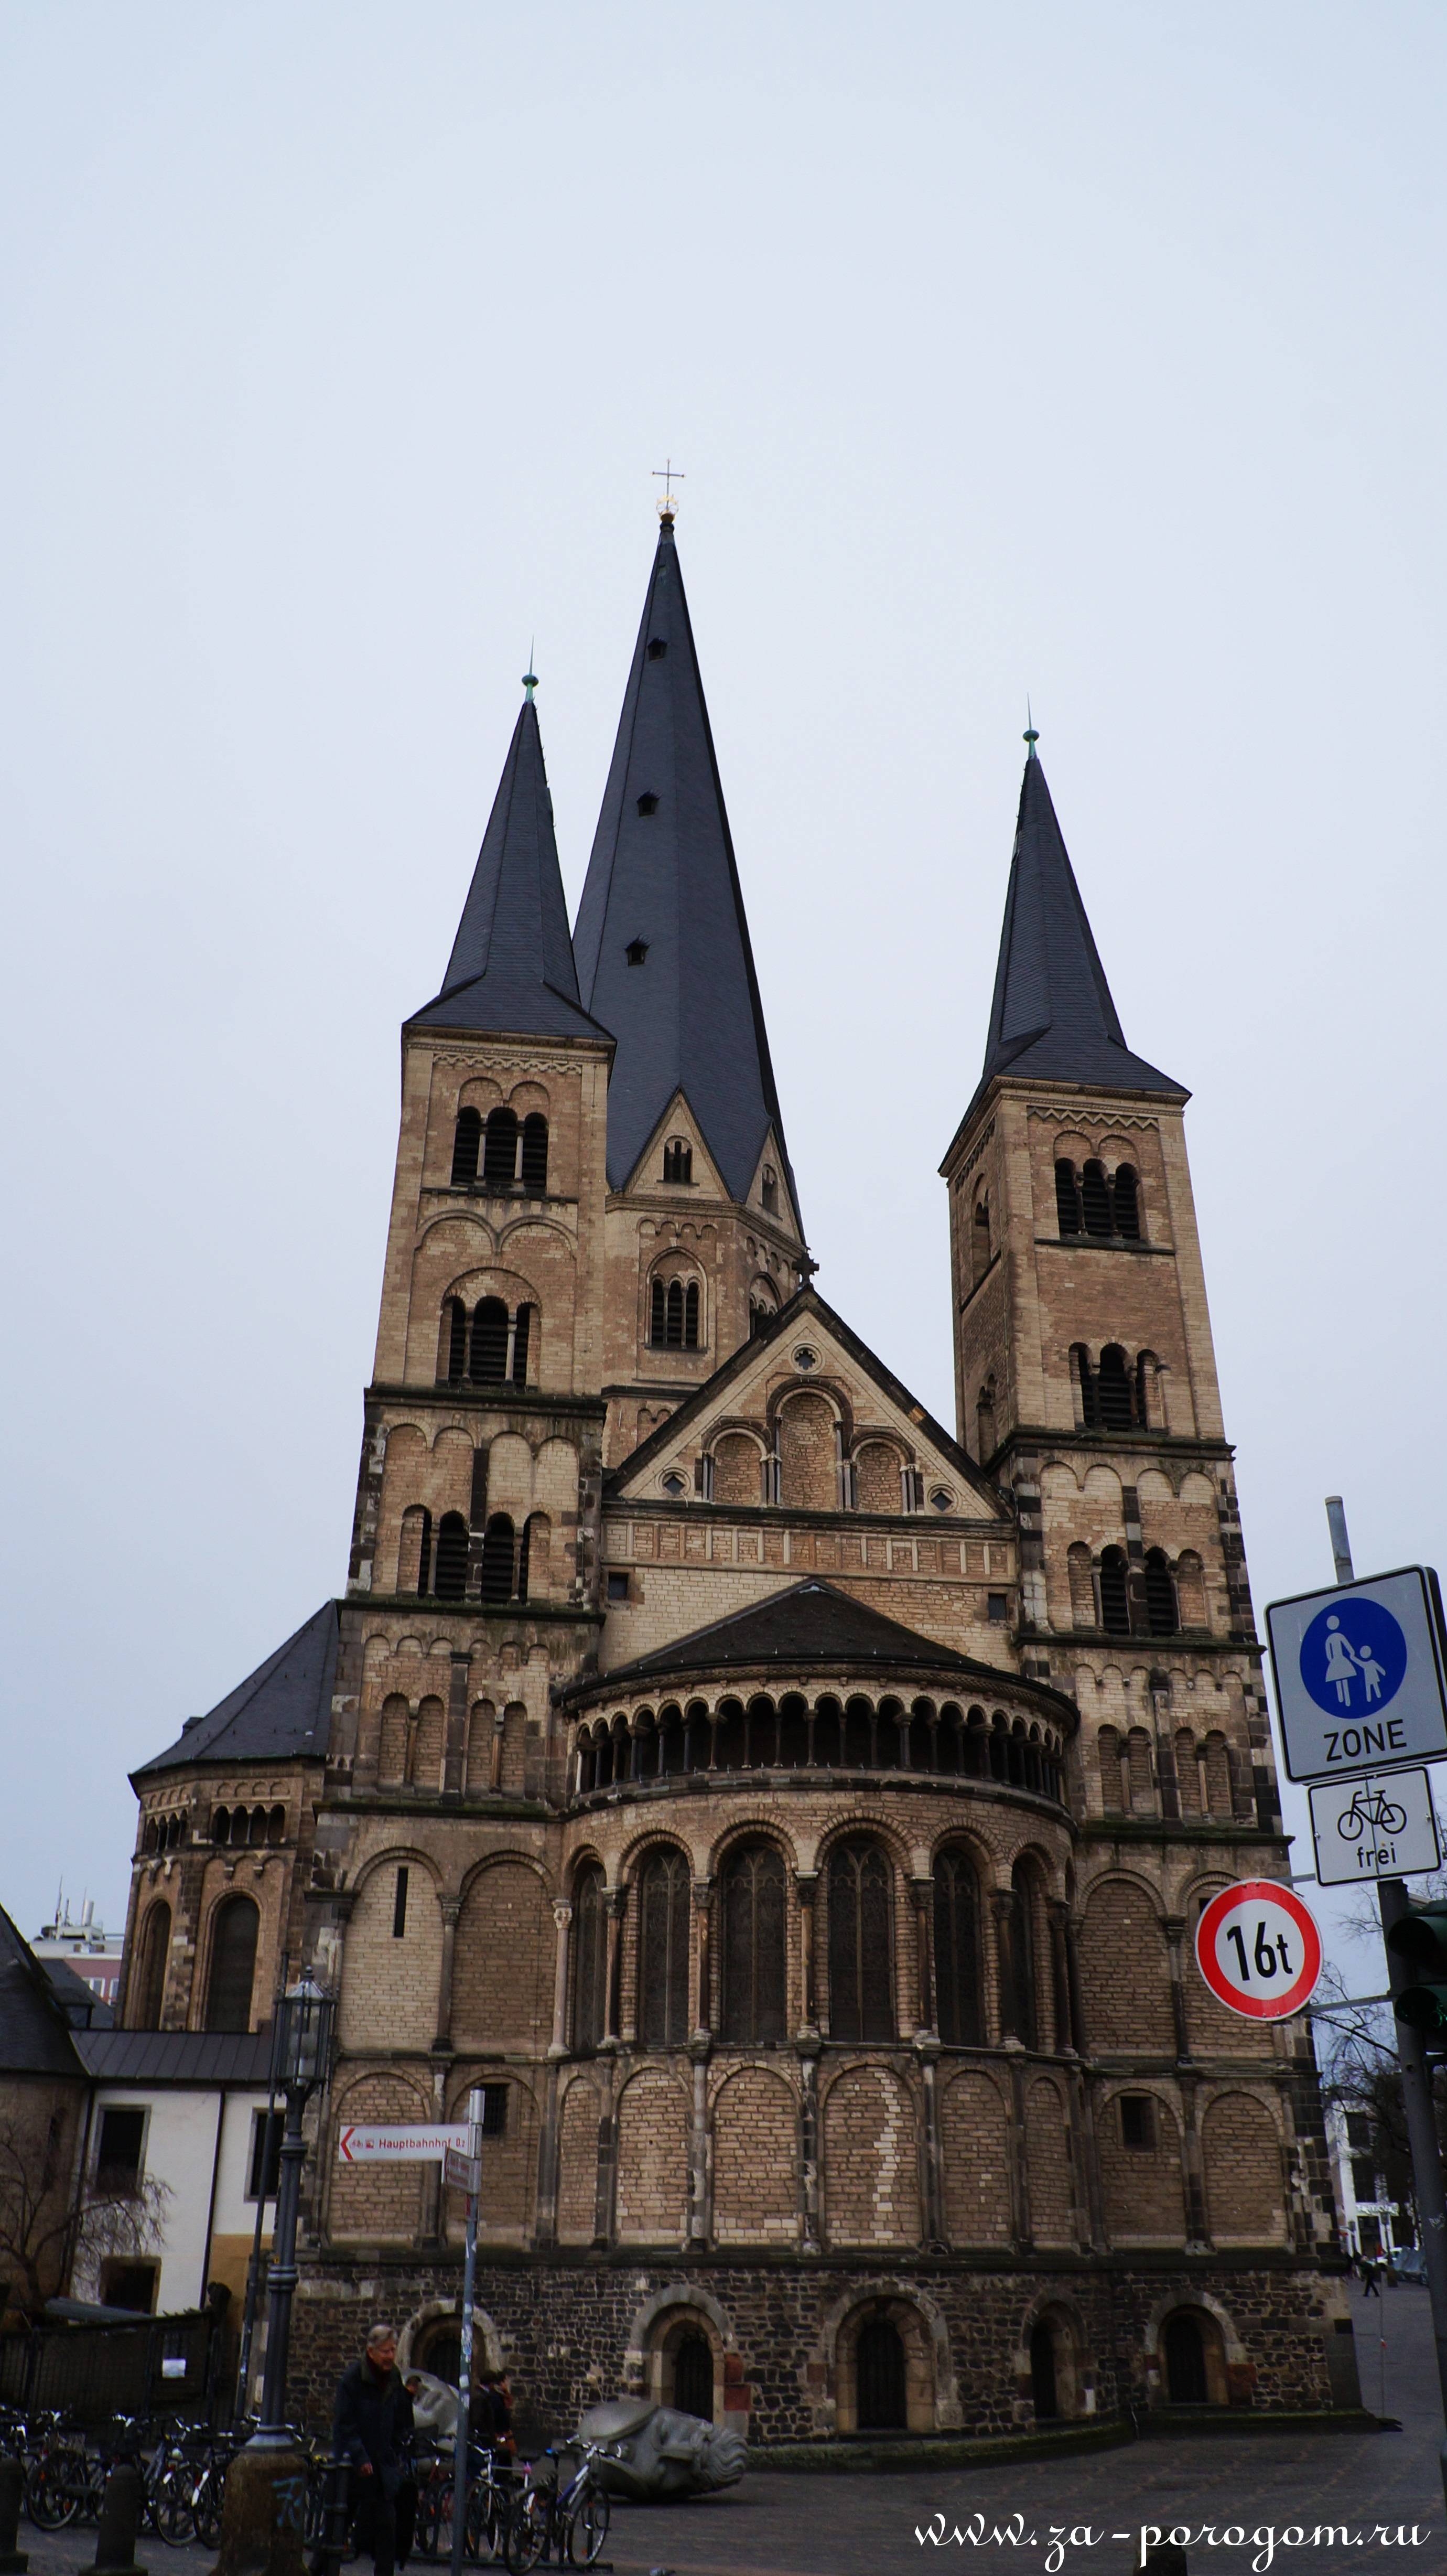 Религиозные объекты бонна (германия): церкви, соборы, мечети, храмы, фото, рейтинг 2021, отзывы, адреса